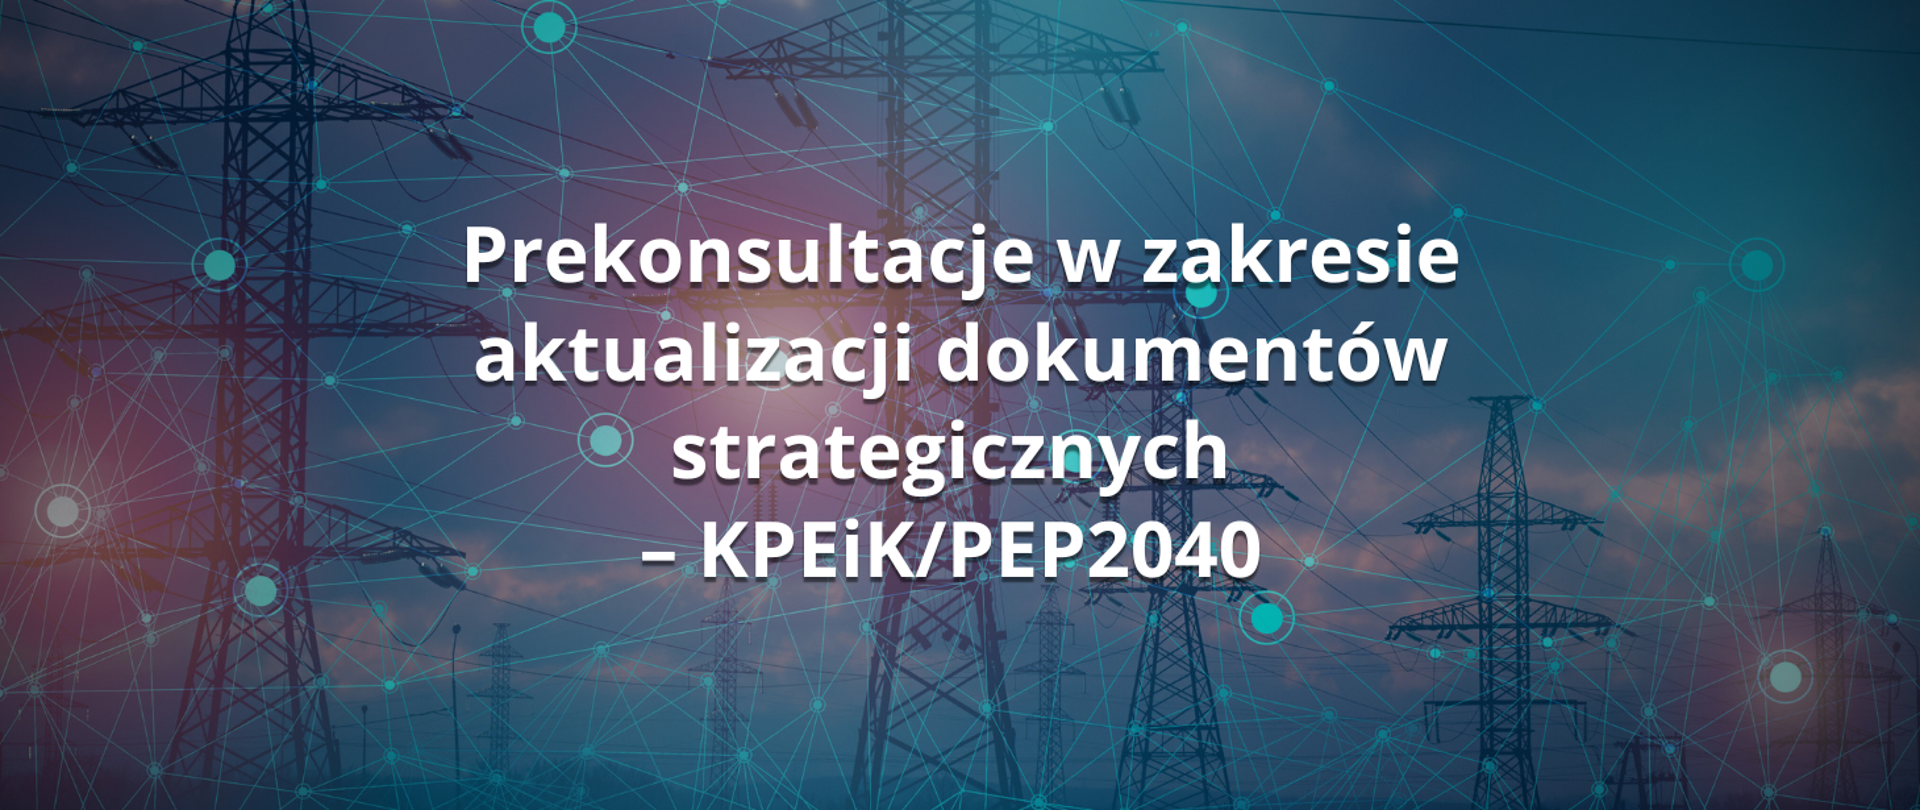 Prekonsultacje w zakresie aktualizacji dokumentów strategicznych – KPEiK/PEP2040